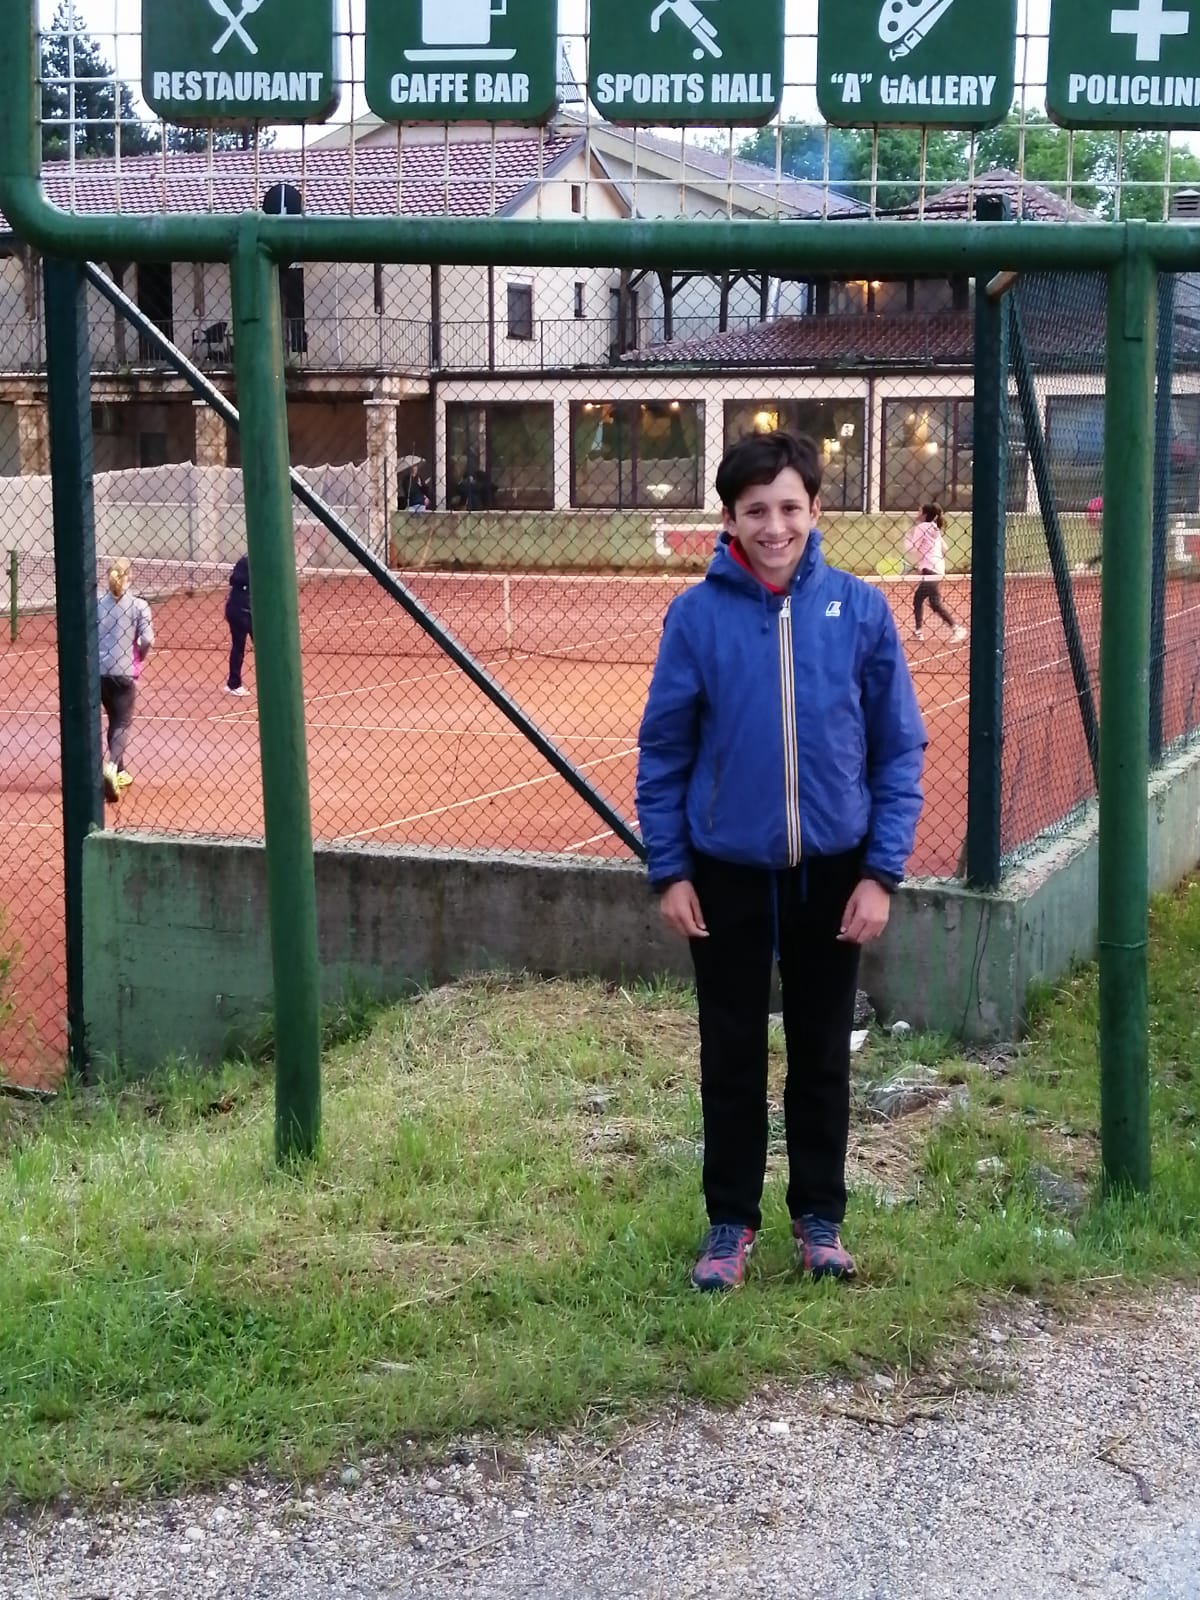 MONDO ACCADEMIA. Pippo Sorbino, già due vittorie al Tennis Europe di Pescara under 14